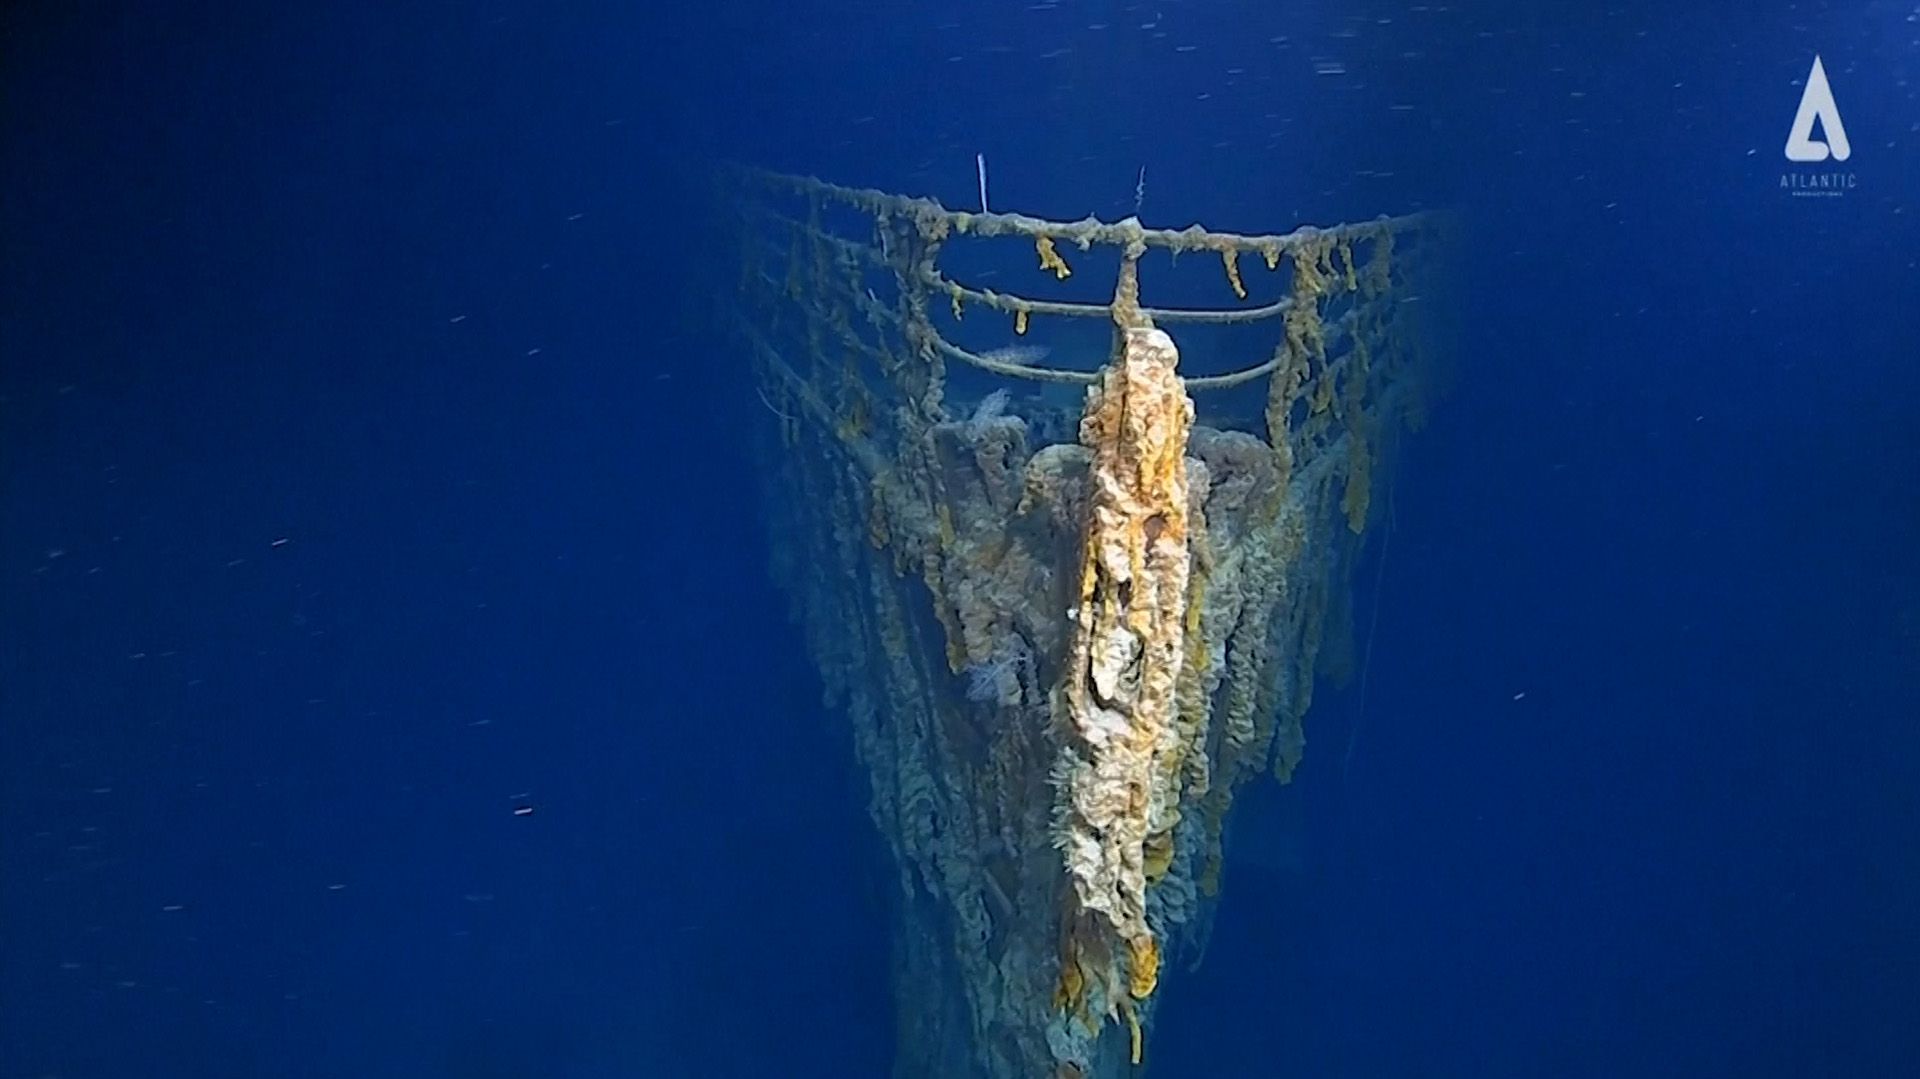 Las inmersiones se realizaron utilizando un sumergible de 4,6 metros de largo y 3,7 metros de ancho, llamado DSV Limiting Factor y construido por la empresa estadounidense Triton Submarines